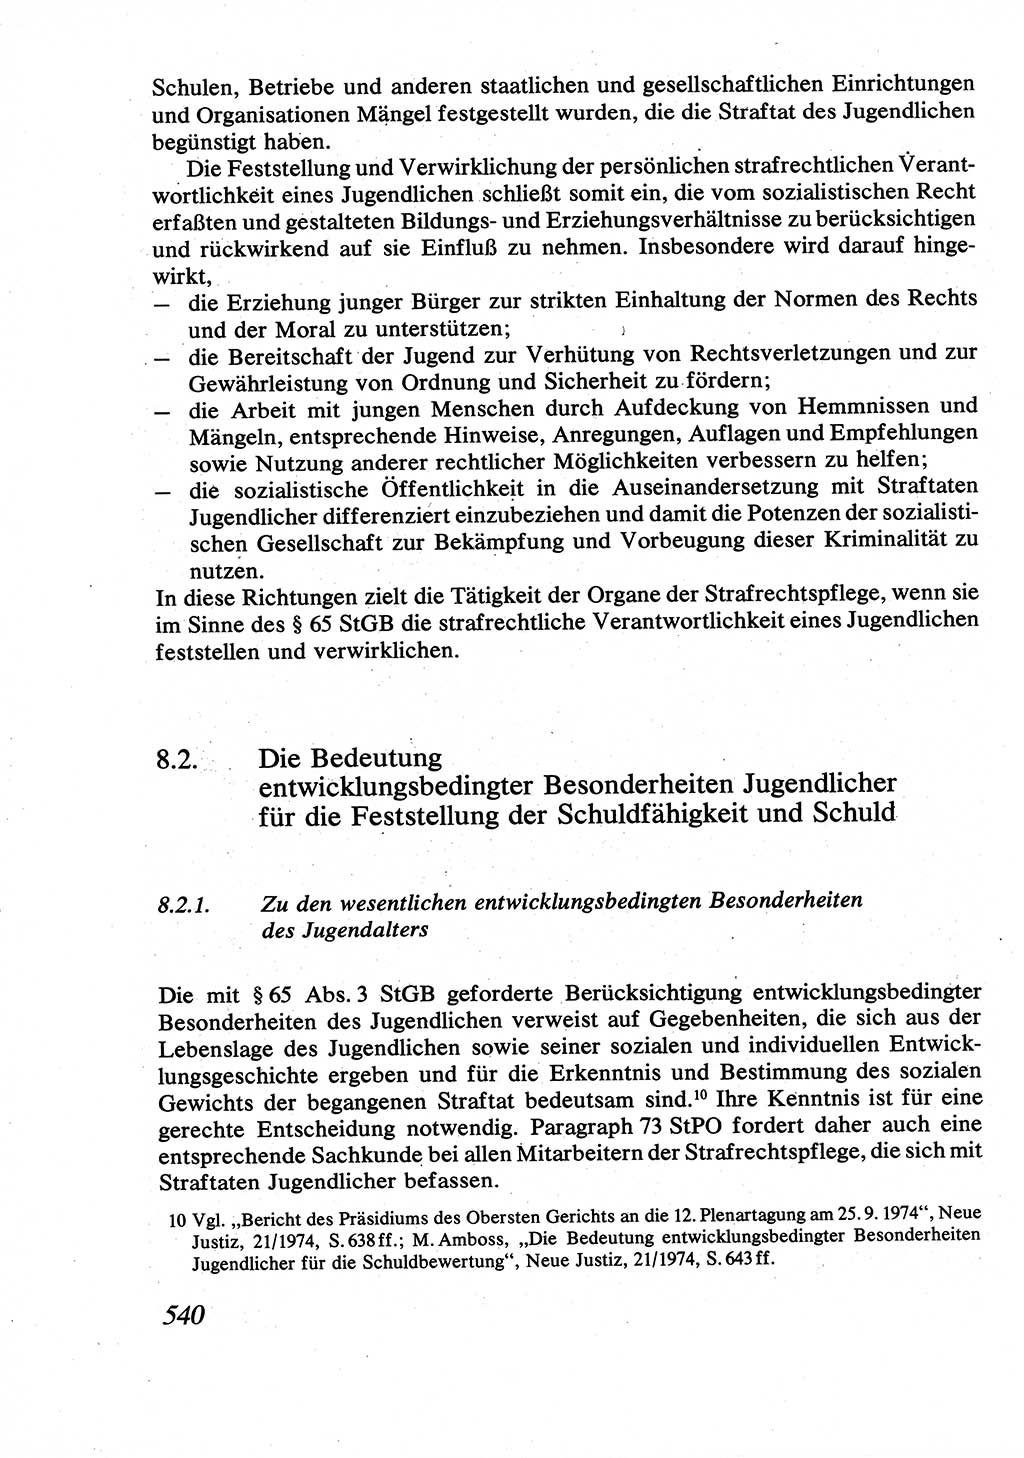 Strafrecht [Deutsche Demokratische Republik (DDR)], Allgemeiner Teil, Lehrbuch 1976, Seite 540 (Strafr. DDR AT Lb. 1976, S. 540)